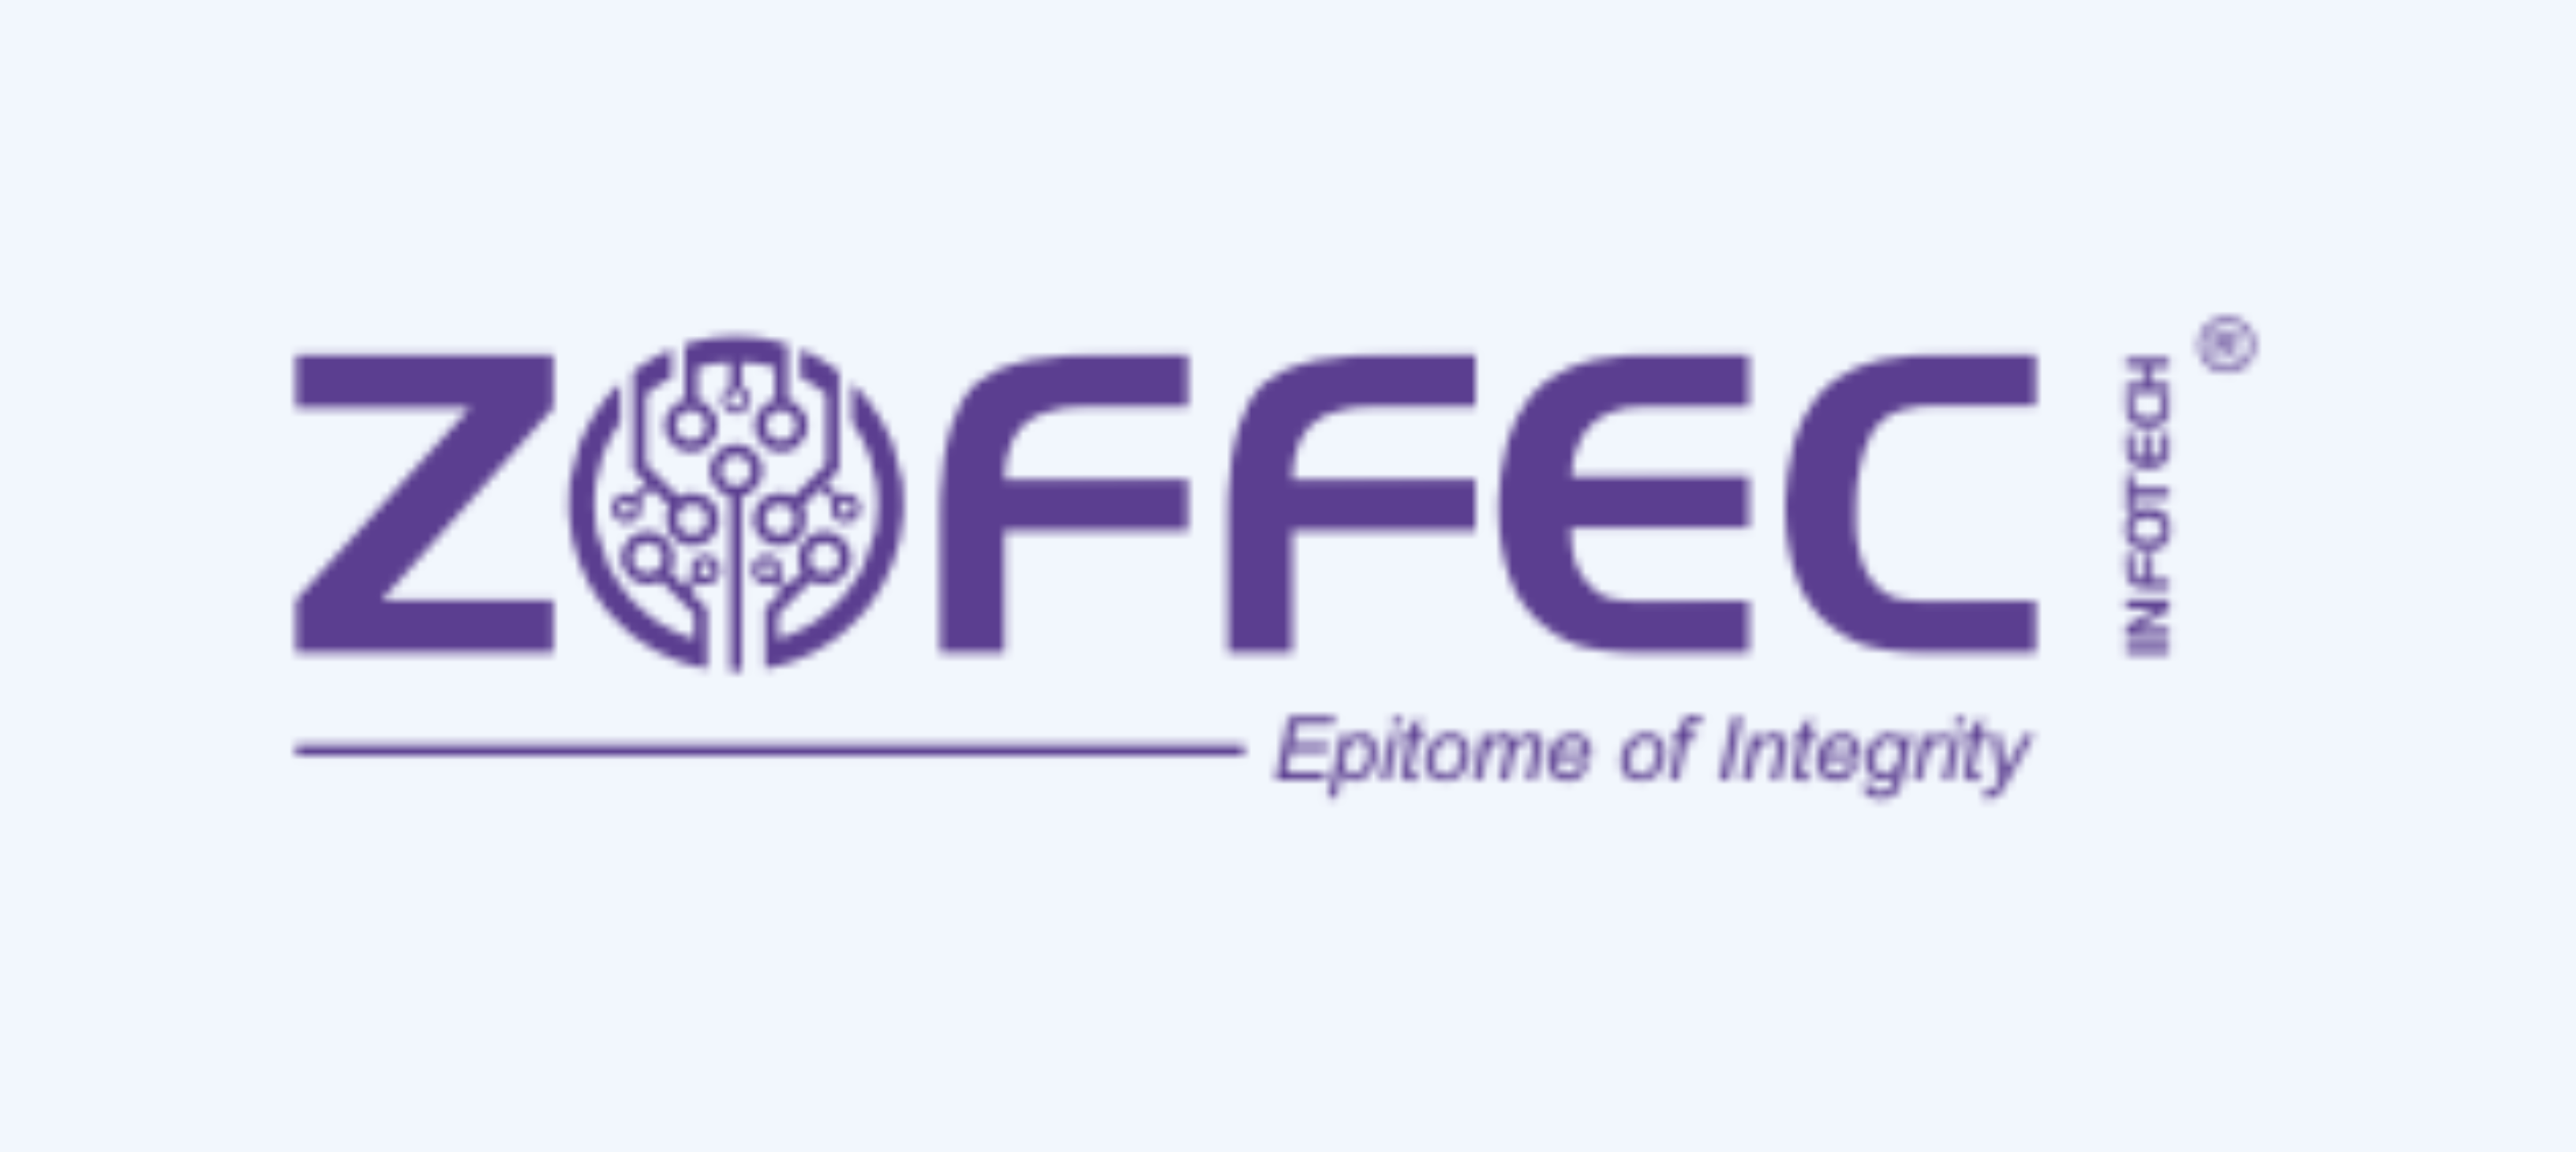 zoffec logo